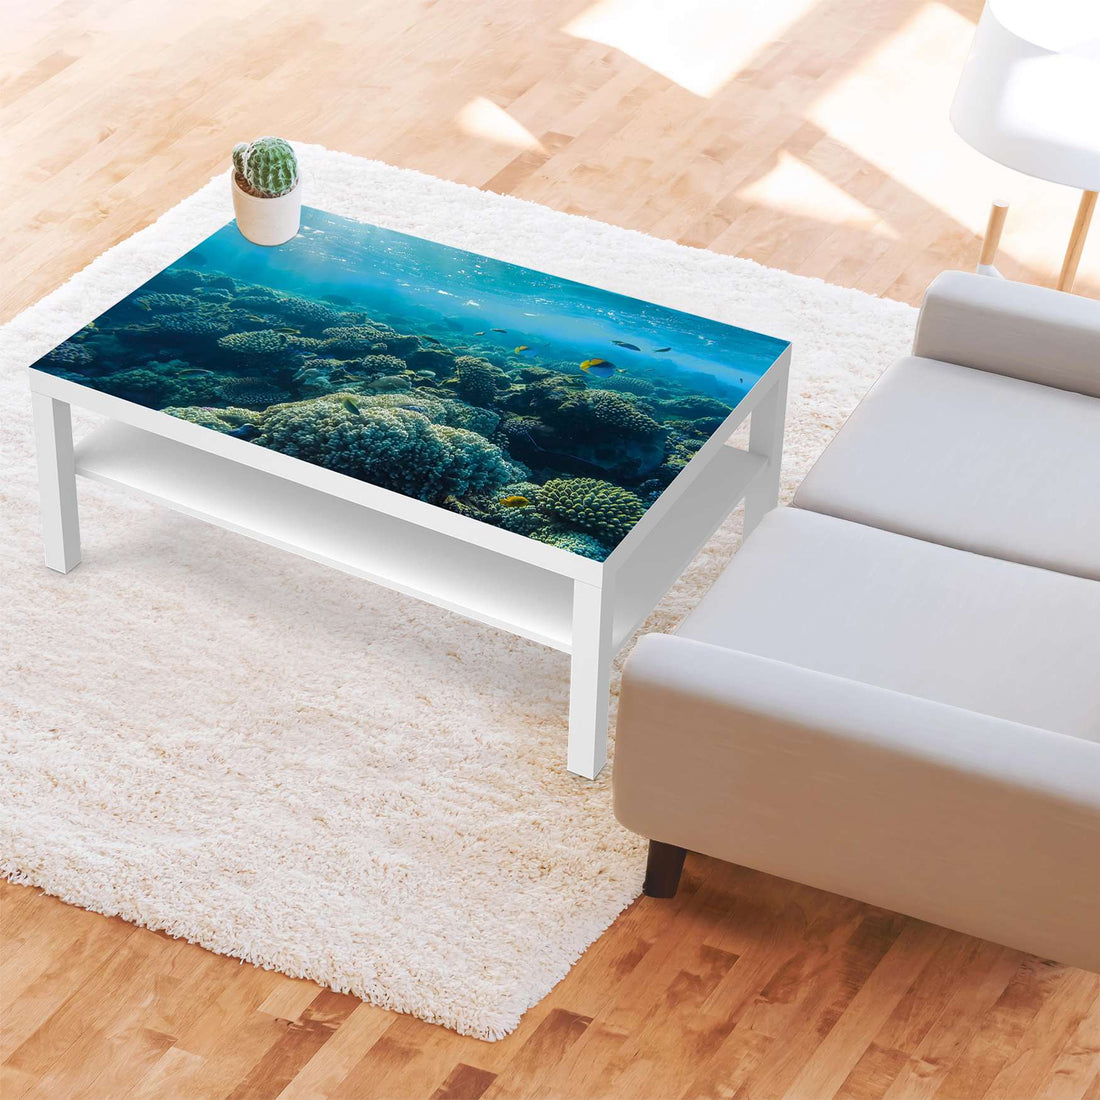 Klebefolie Underwater World - IKEA Lack Tisch 118x78 cm - Wohnzimmer